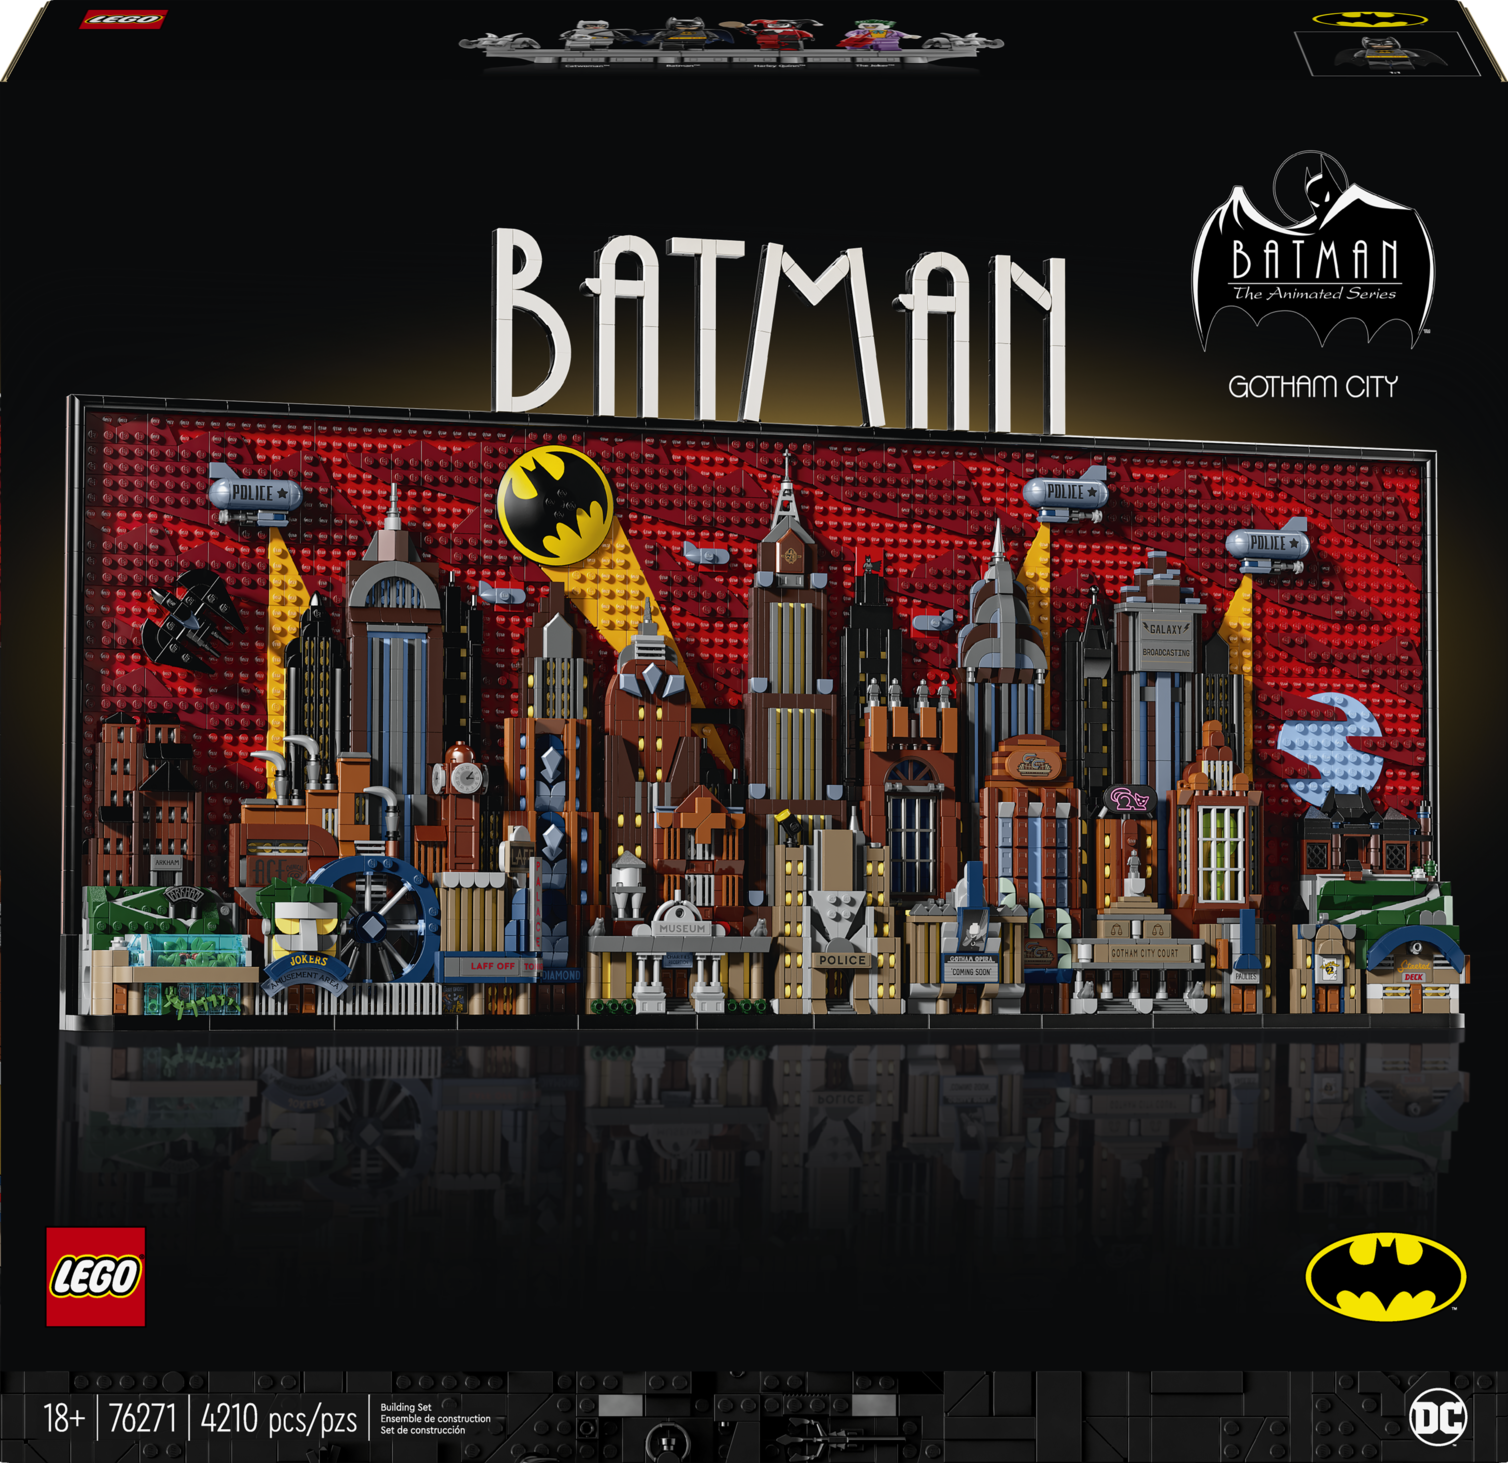 LEGO celebra los 85 años de Batman con un nuevo set 6